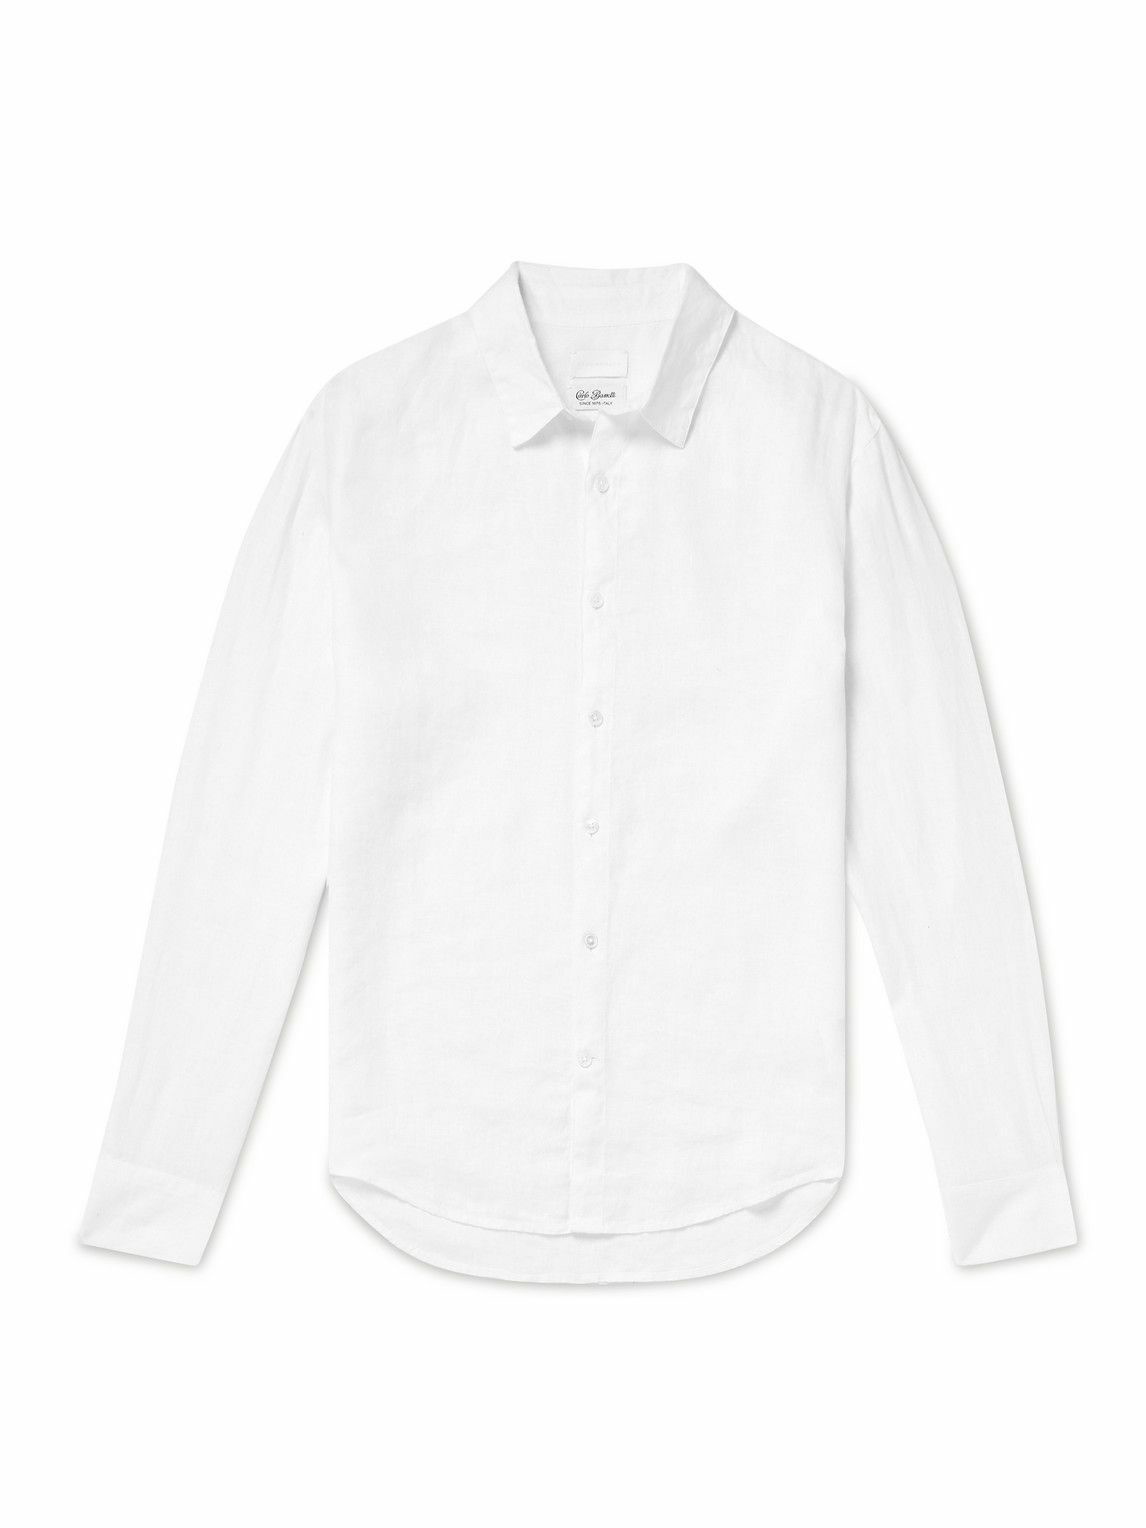 Club Monaco - Cotton-Twill Shirt - White Club Monaco